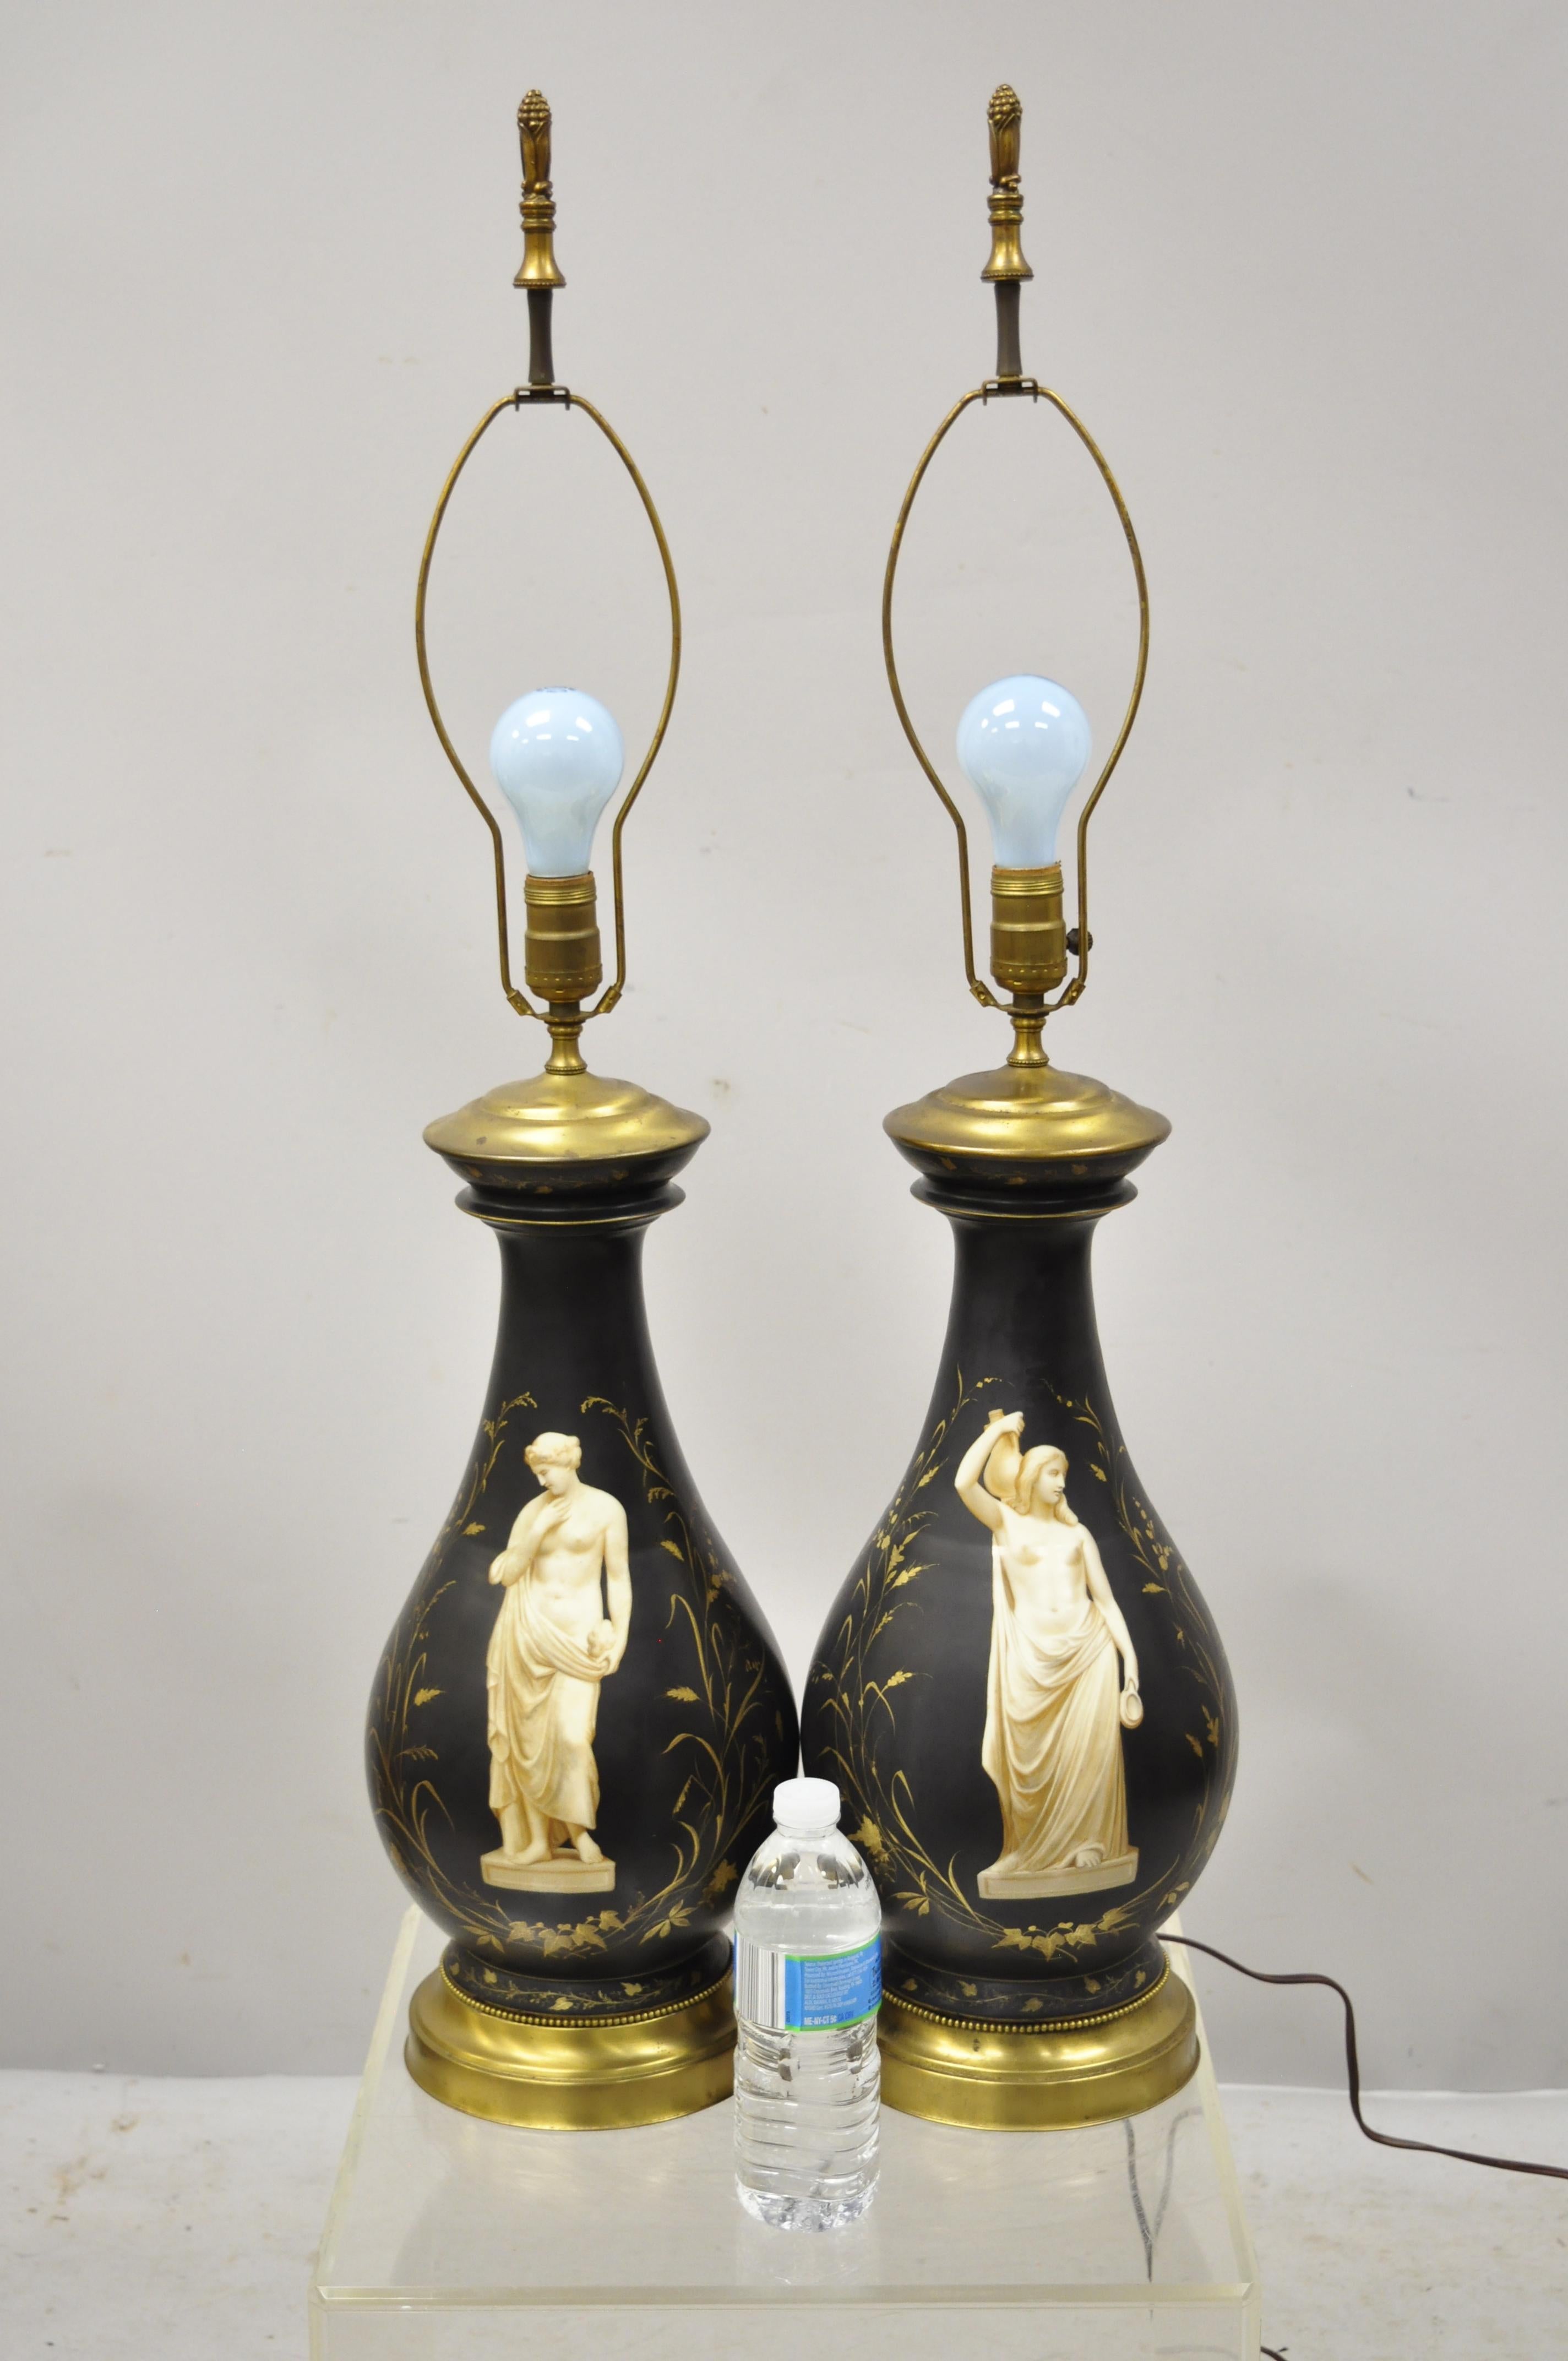 Antike französische neoklassische schwarze Porzellan klassische bauchige Tischlampen - ein Paar. Schwarzer, bauchiger Porzellankörper mit gemalten neoklassizistischen/klassizistischen Figuren und Blattranken, sehr schöner antiker Gegenstand, toller